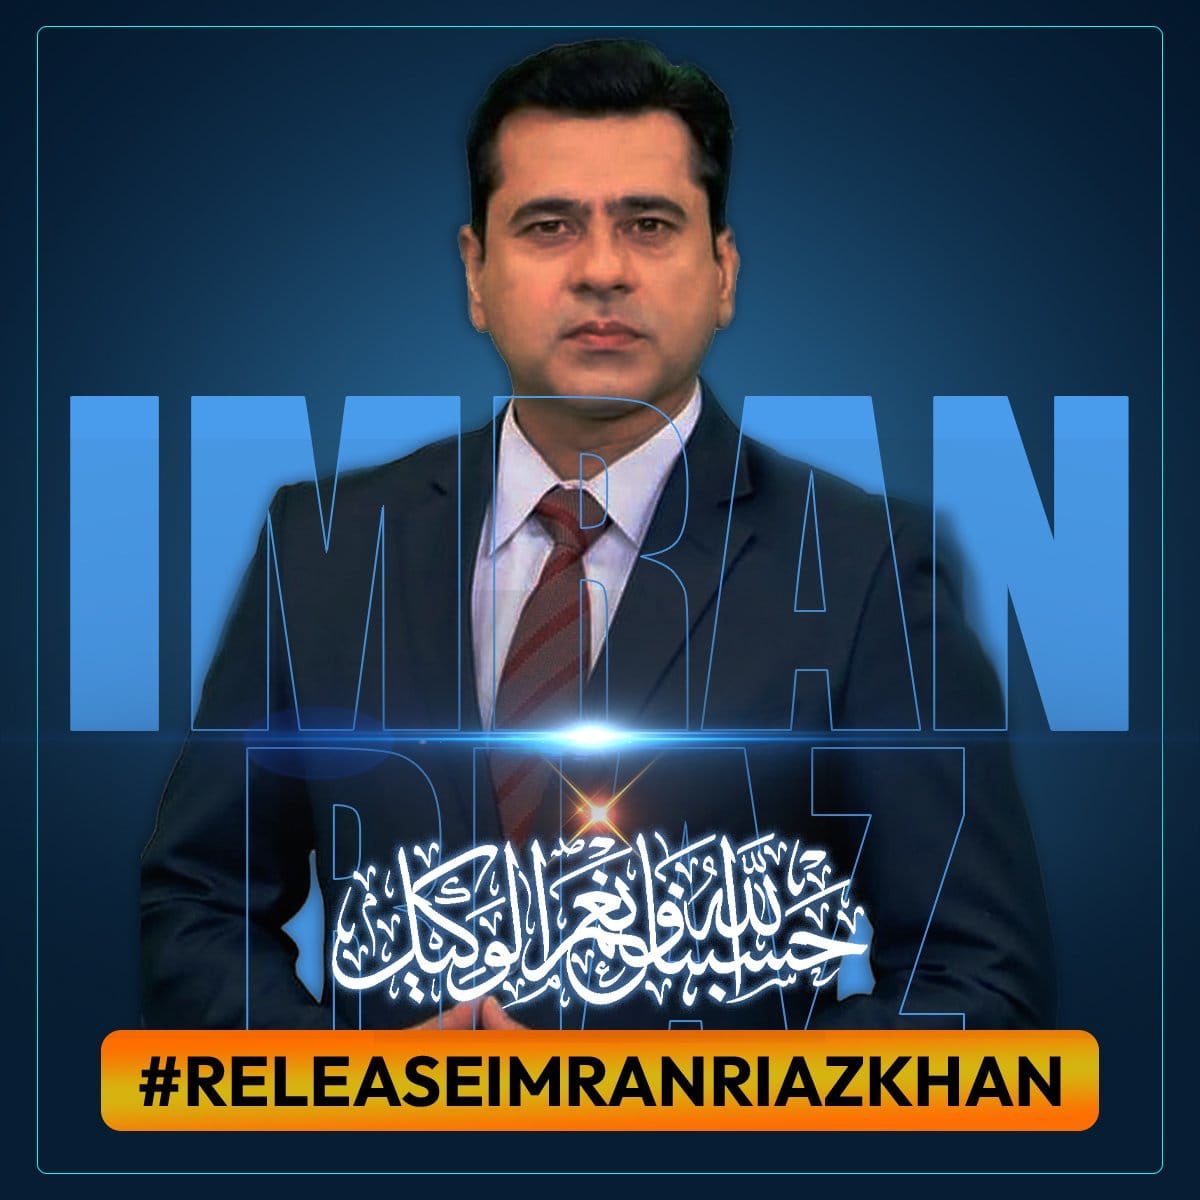 Allah tu apna khaas fazal o karam farma. Kheriat se ghar aein apne ameen 🤲🏻🤲🏻

#ReleaseImranKhan 
#ReleaseImranRiazKhan 
#ReleaseAsadToor 
#ImranRiazKhan